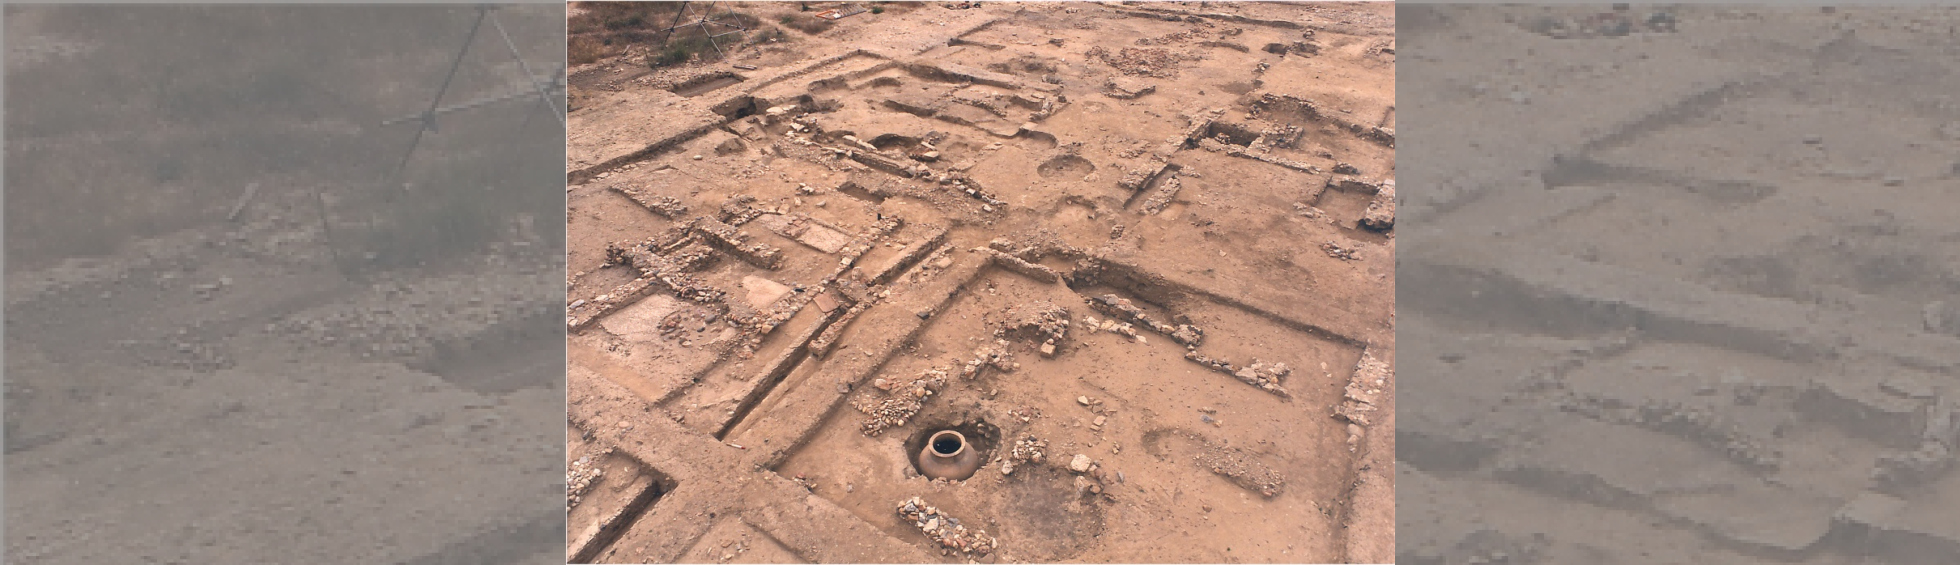 Habitat romain